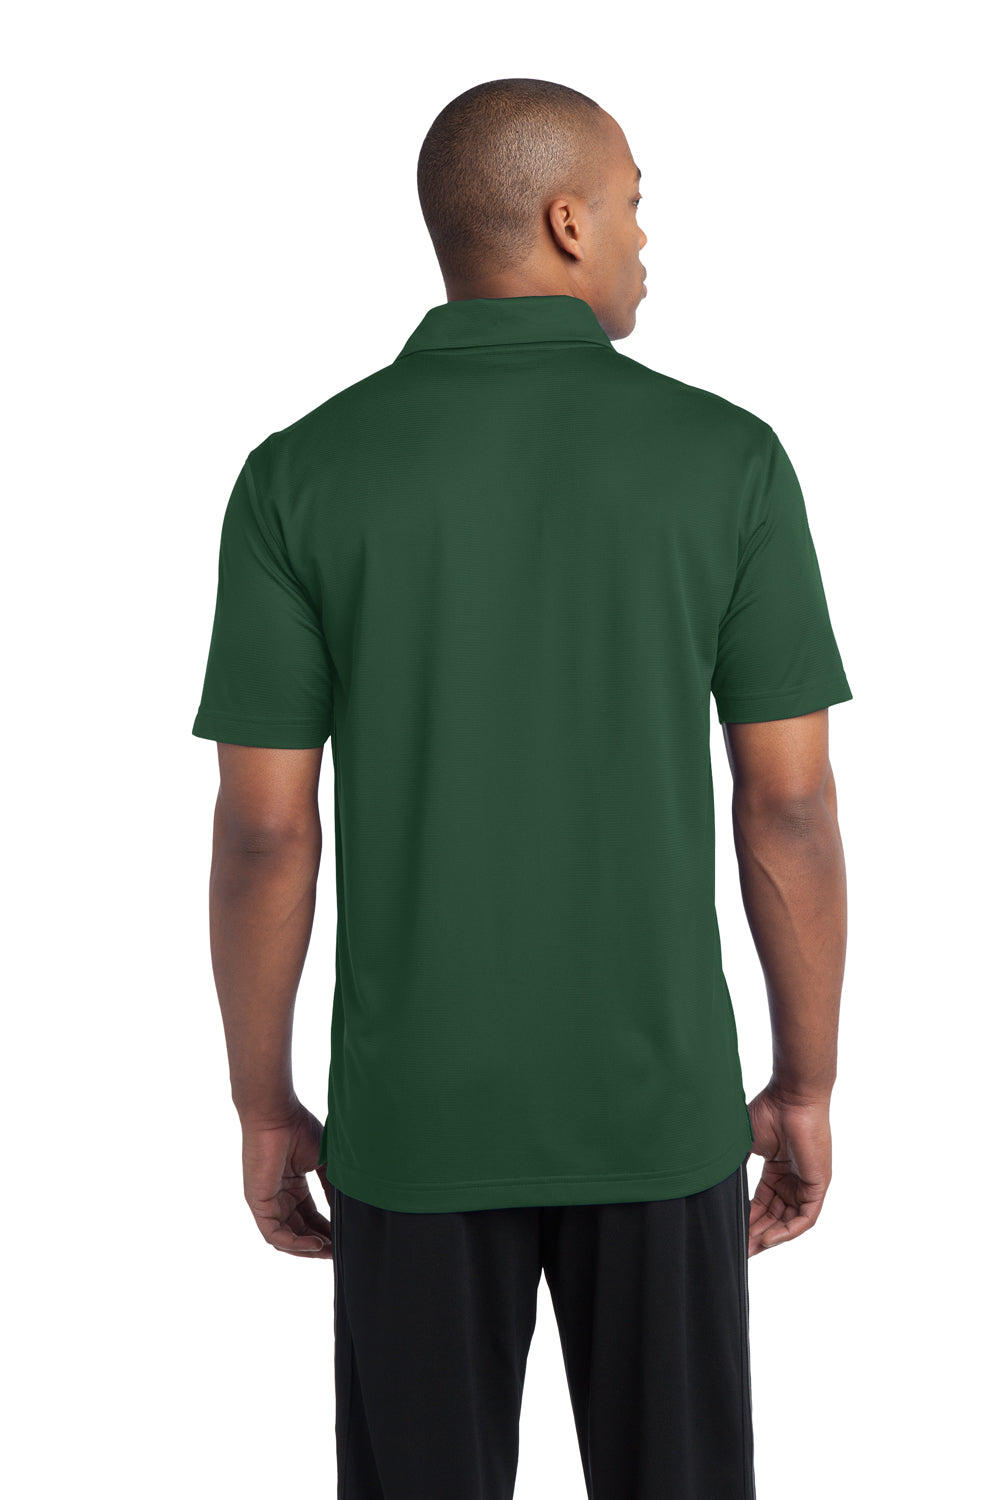 Sport-Tek ST690 Mens Active Mesh Moisture Wicking Short Sleeve Polo Shirt Forest Green Back